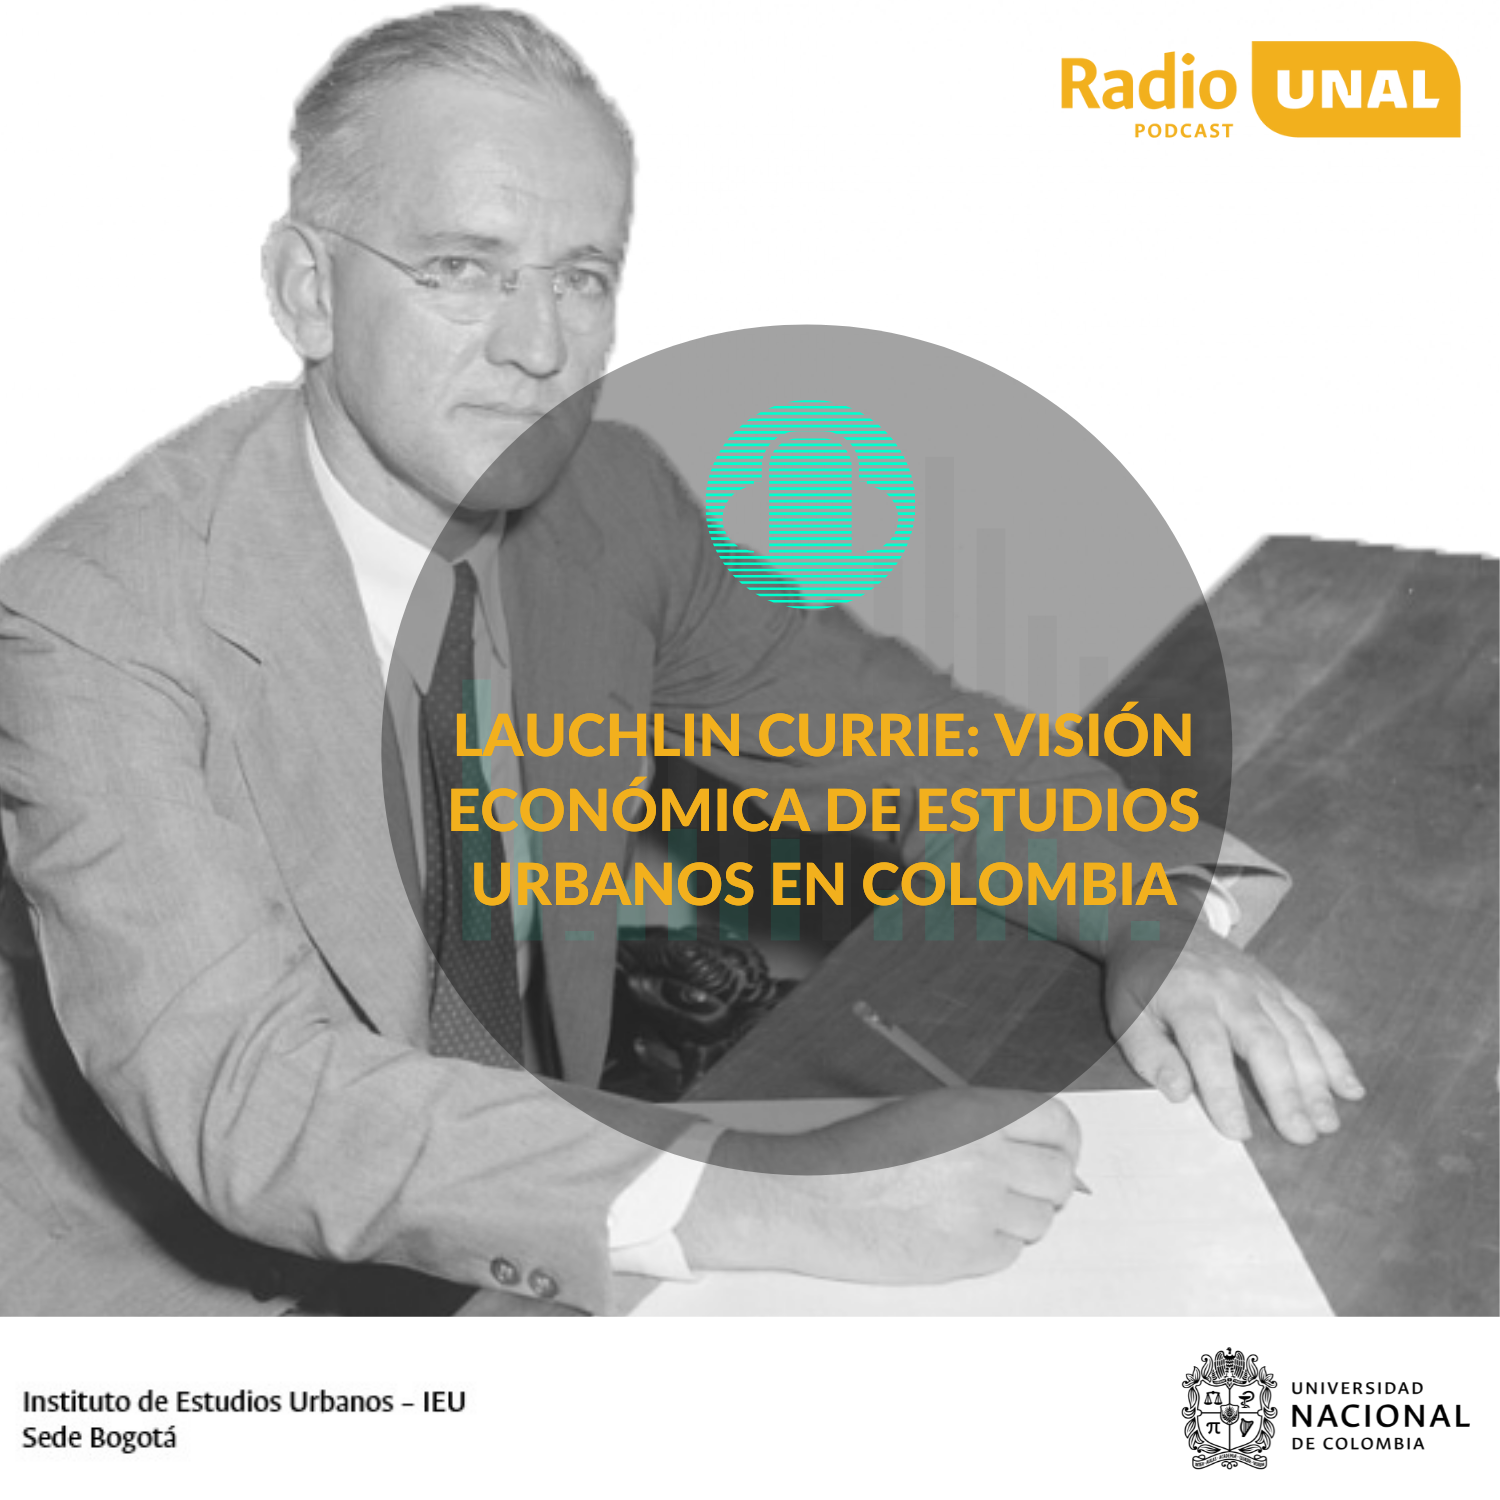 #PodcastRadioUnal  Lauchlin Currie: Visión económica de estudios urbanos en Colombia